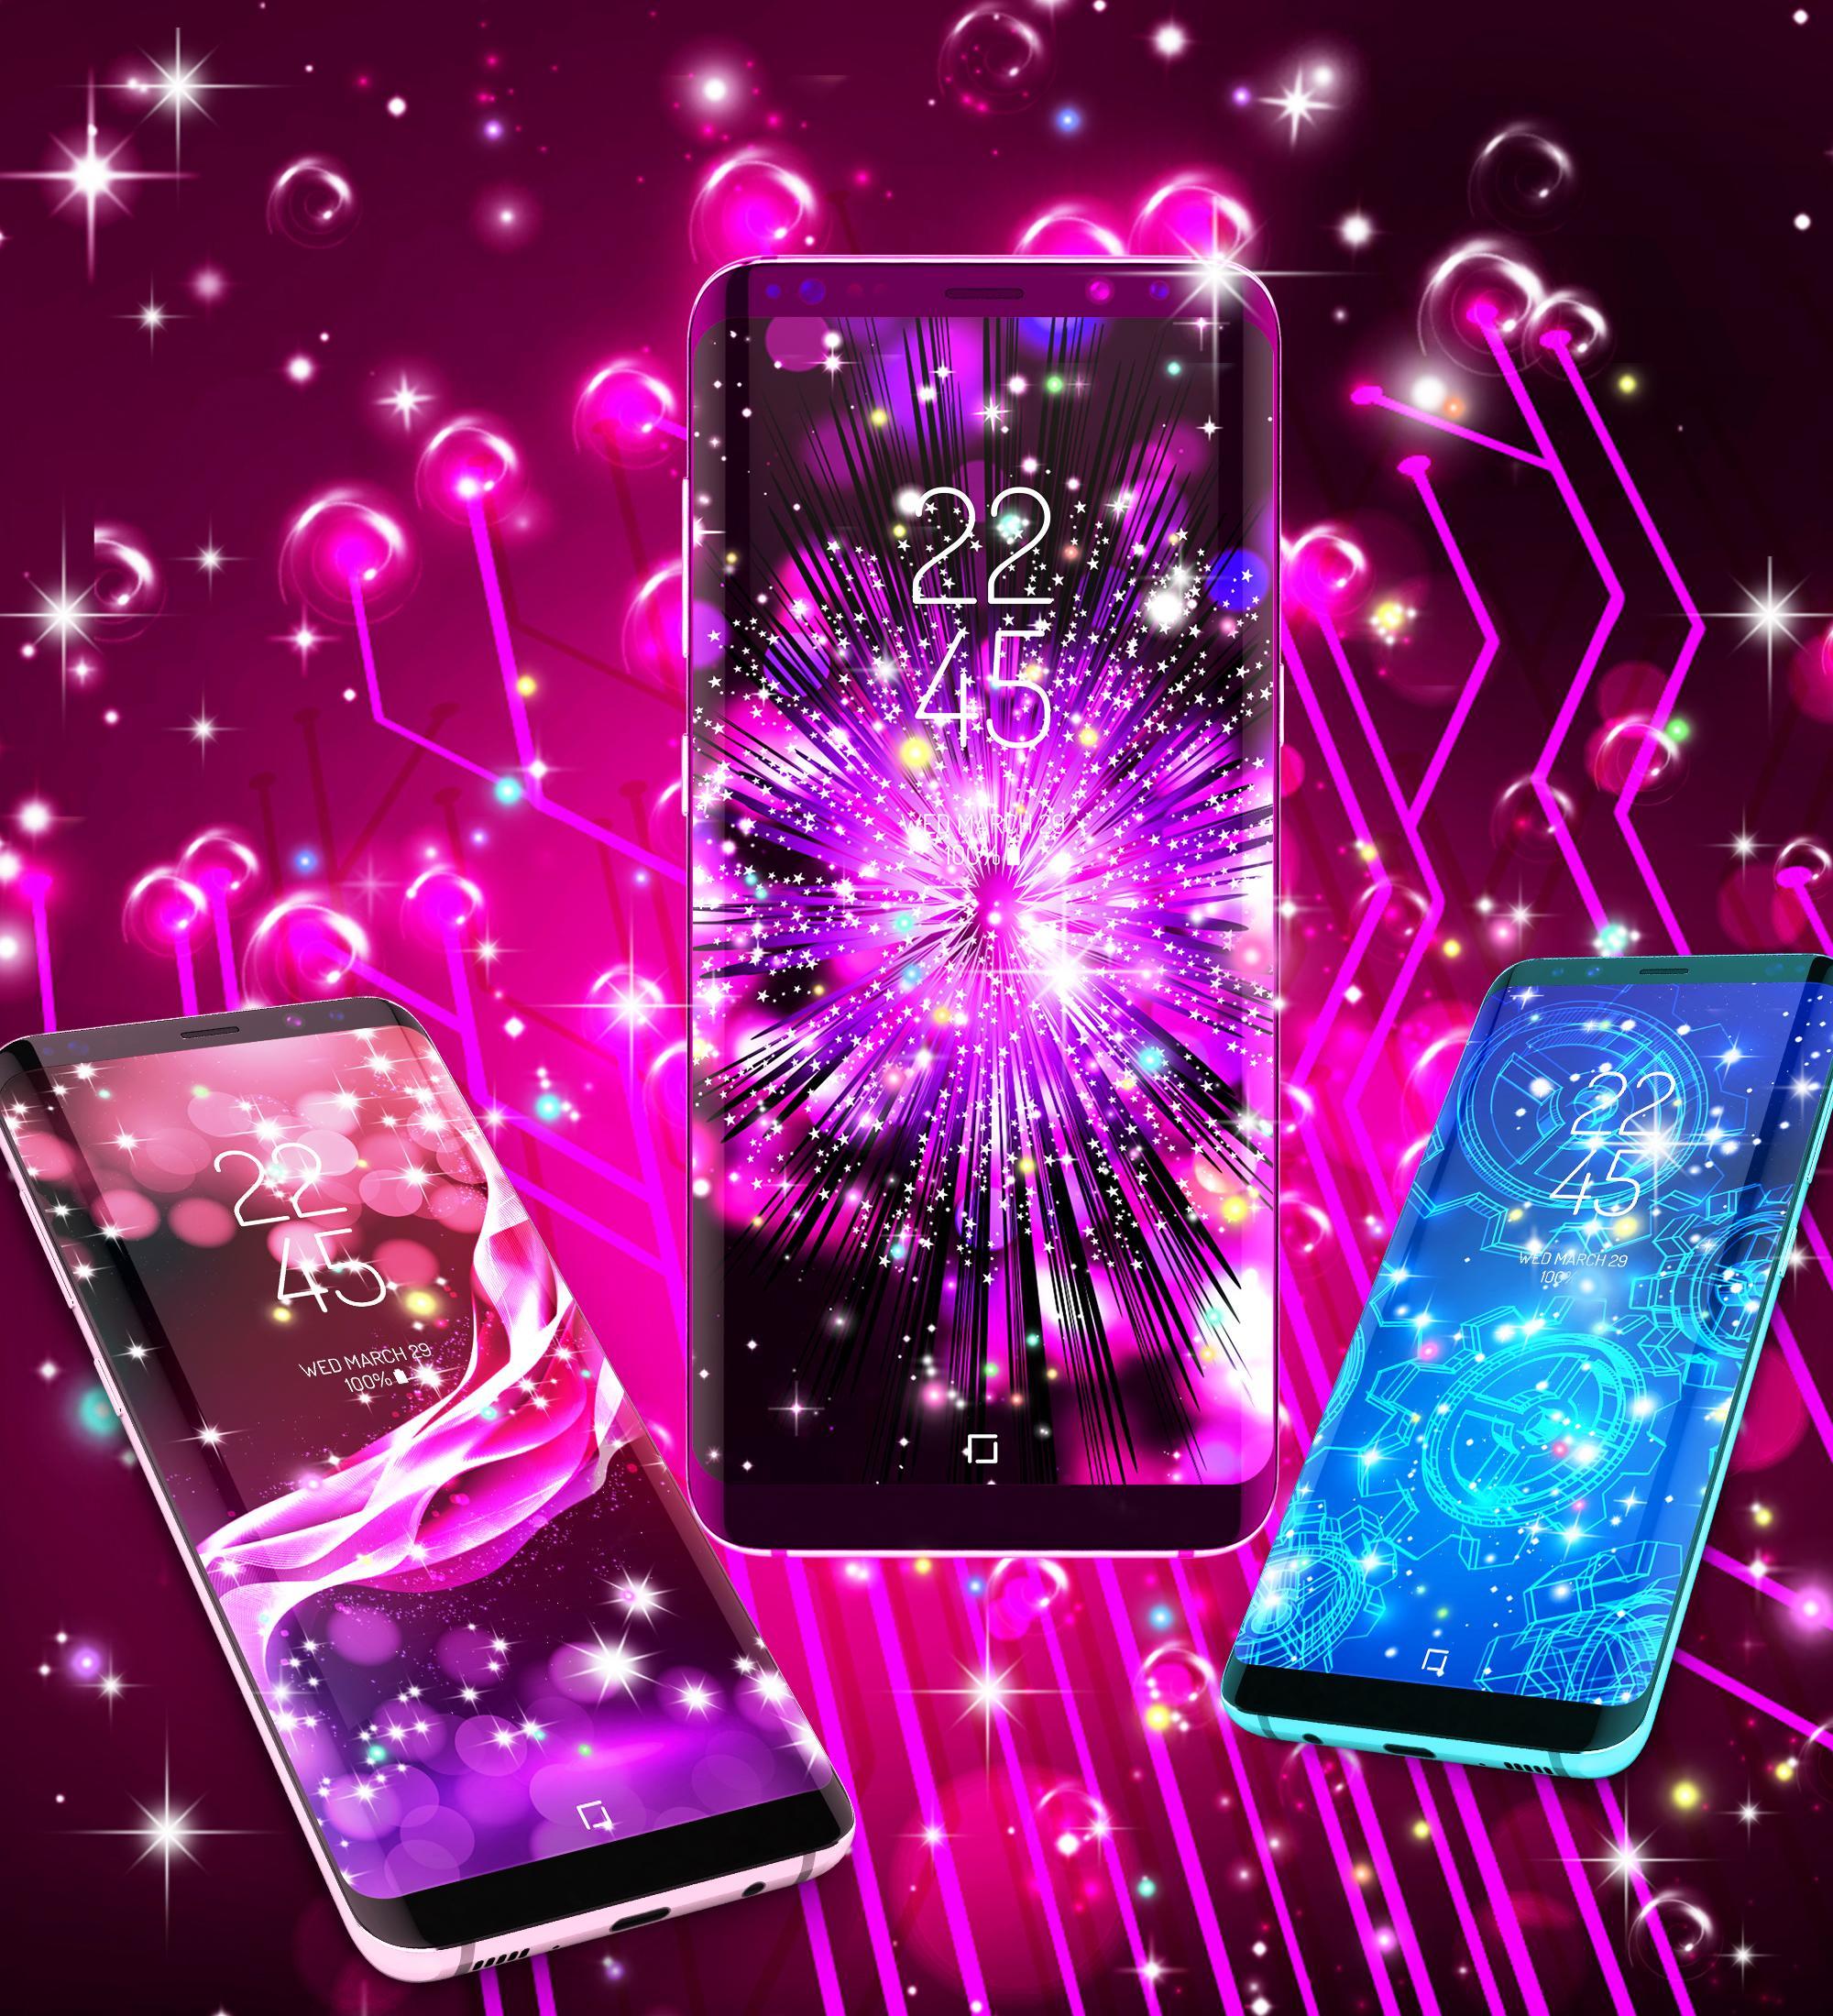 télécharger de nouvelles images de fond d'écran,des accessoires pour téléphone mobile,rose,violet,violet,gadget